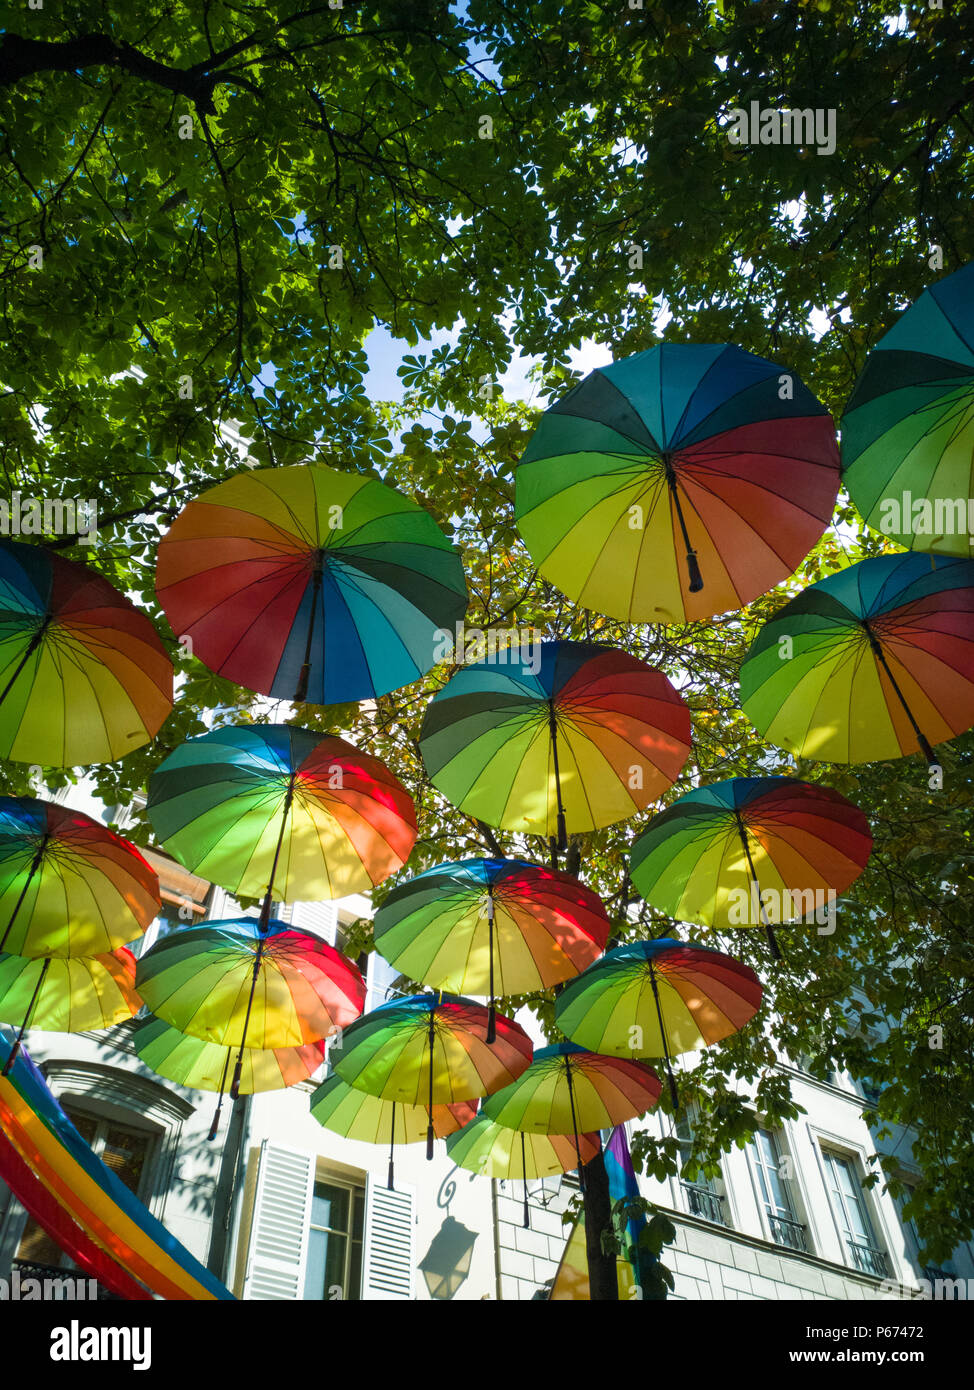 Pour préparer la Gay Pride à Paris, des dizaines de parapluies dans les couleurs de l'arc-en-ciel ont été suspendus. Banque D'Images